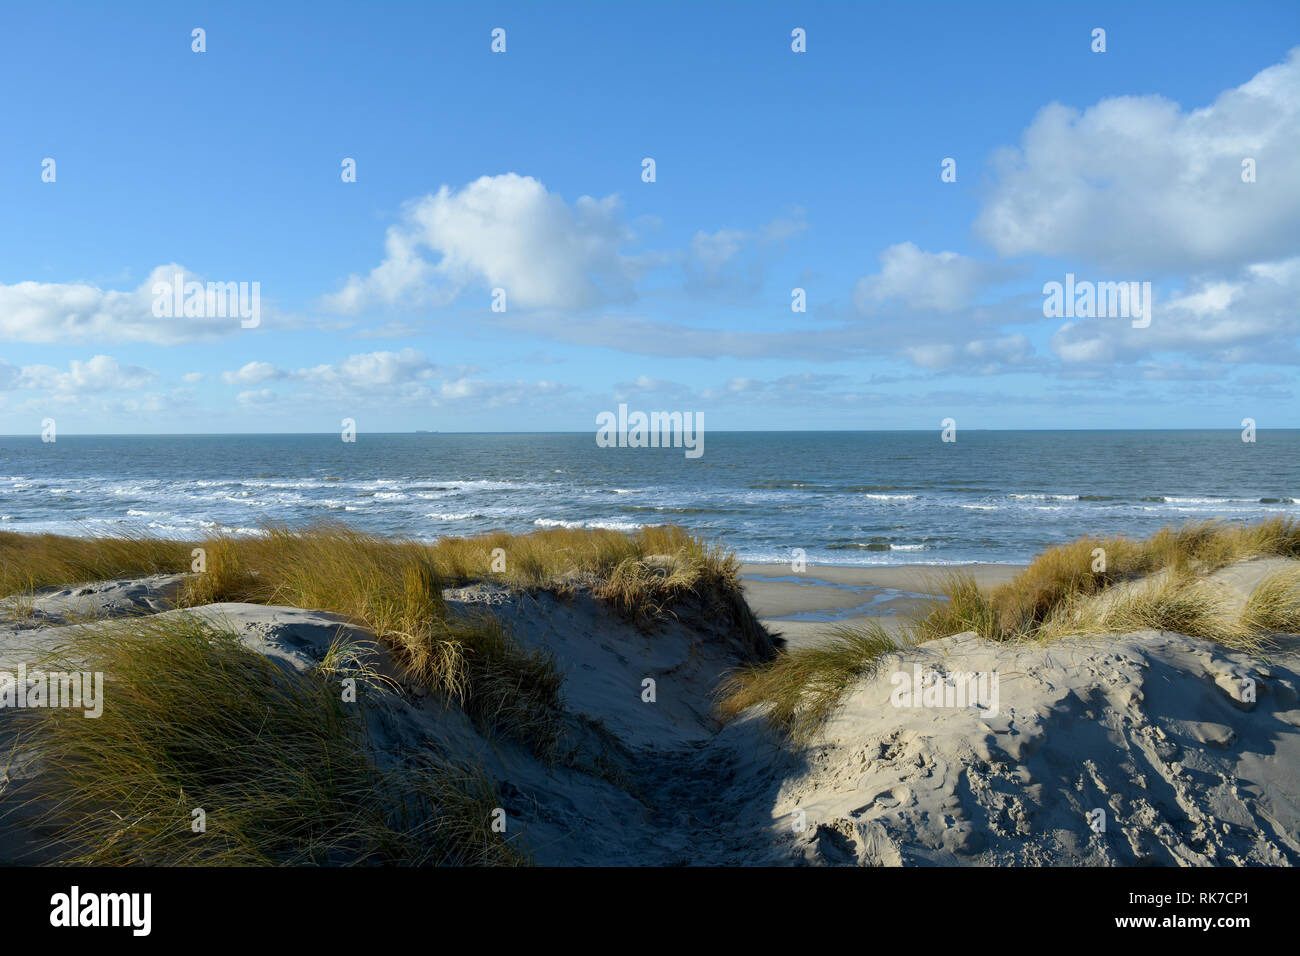 Ansicht zwischen zwei Dünen, mit Strand Gras gewachsen, auf einer Nordsee strand von Texel. Insel in Holland. Stockfoto